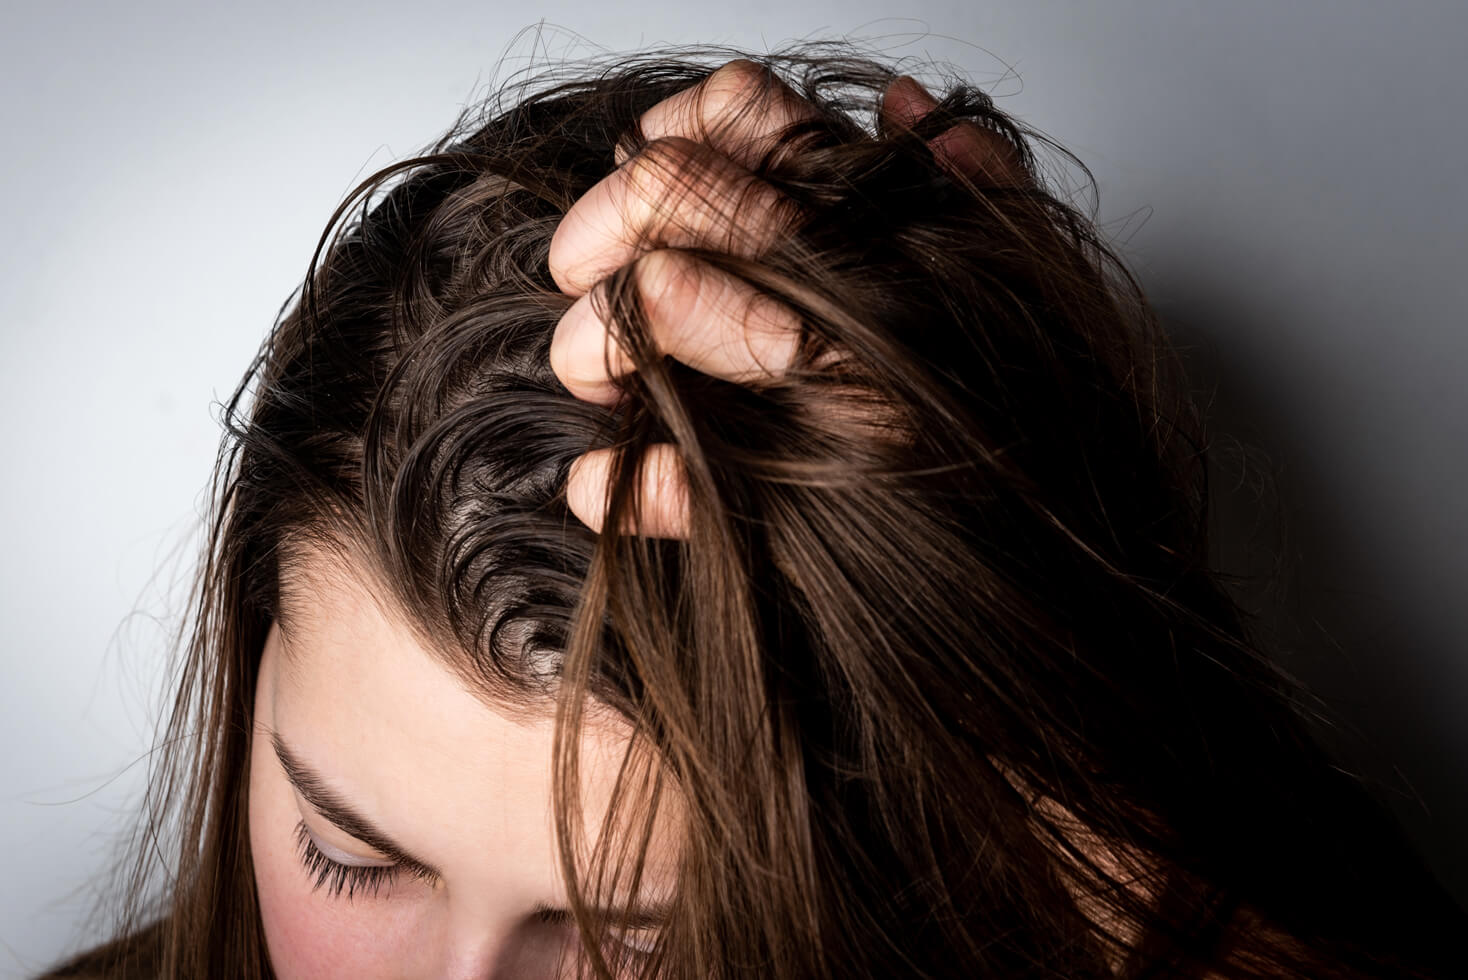 أفضل 7 وصفات طبيعية لعلاج الشعر الدهني مجربة آمنة ولن تحتاجي لشراء منتجات صناعية